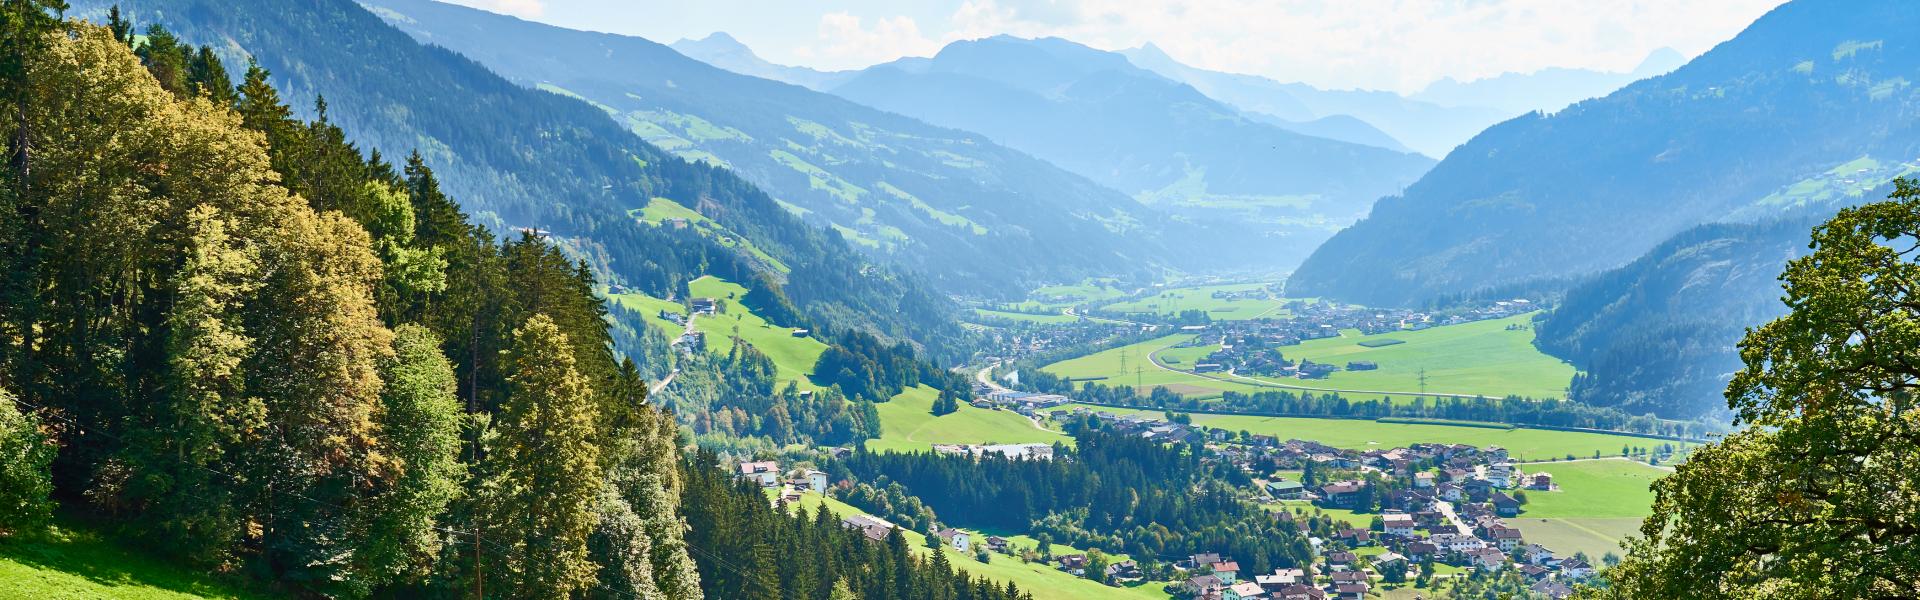 Noclegi i apartamenty wakacyjne w Tyrolu Wschodnim - Casamundo